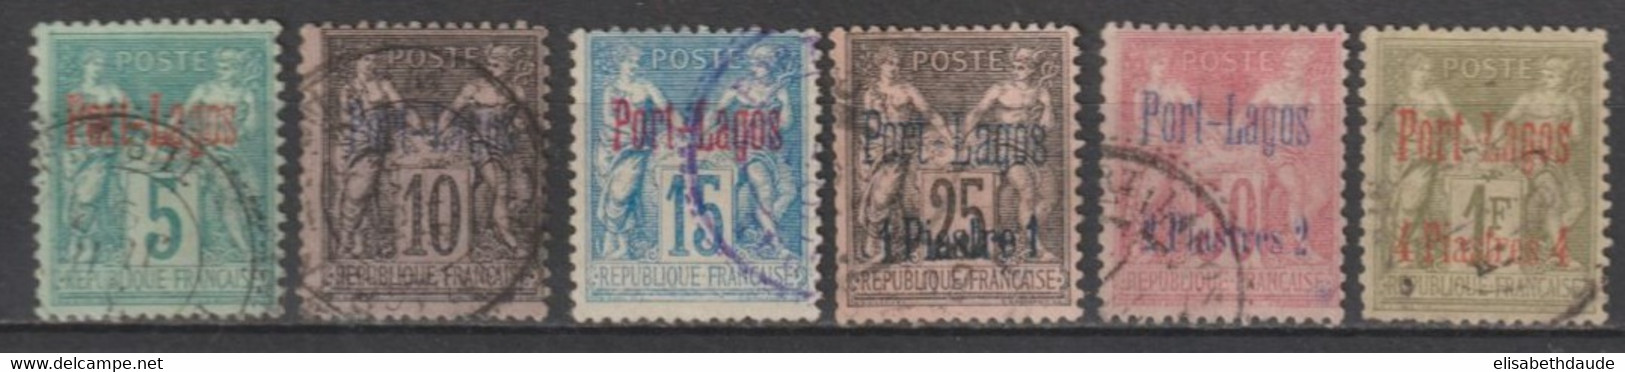 PORT LAGOS - 1893 - SERIE COMPLETE YVERT N° 1/6 OBLITERES - COTE = 500 EUR. - Oblitérés